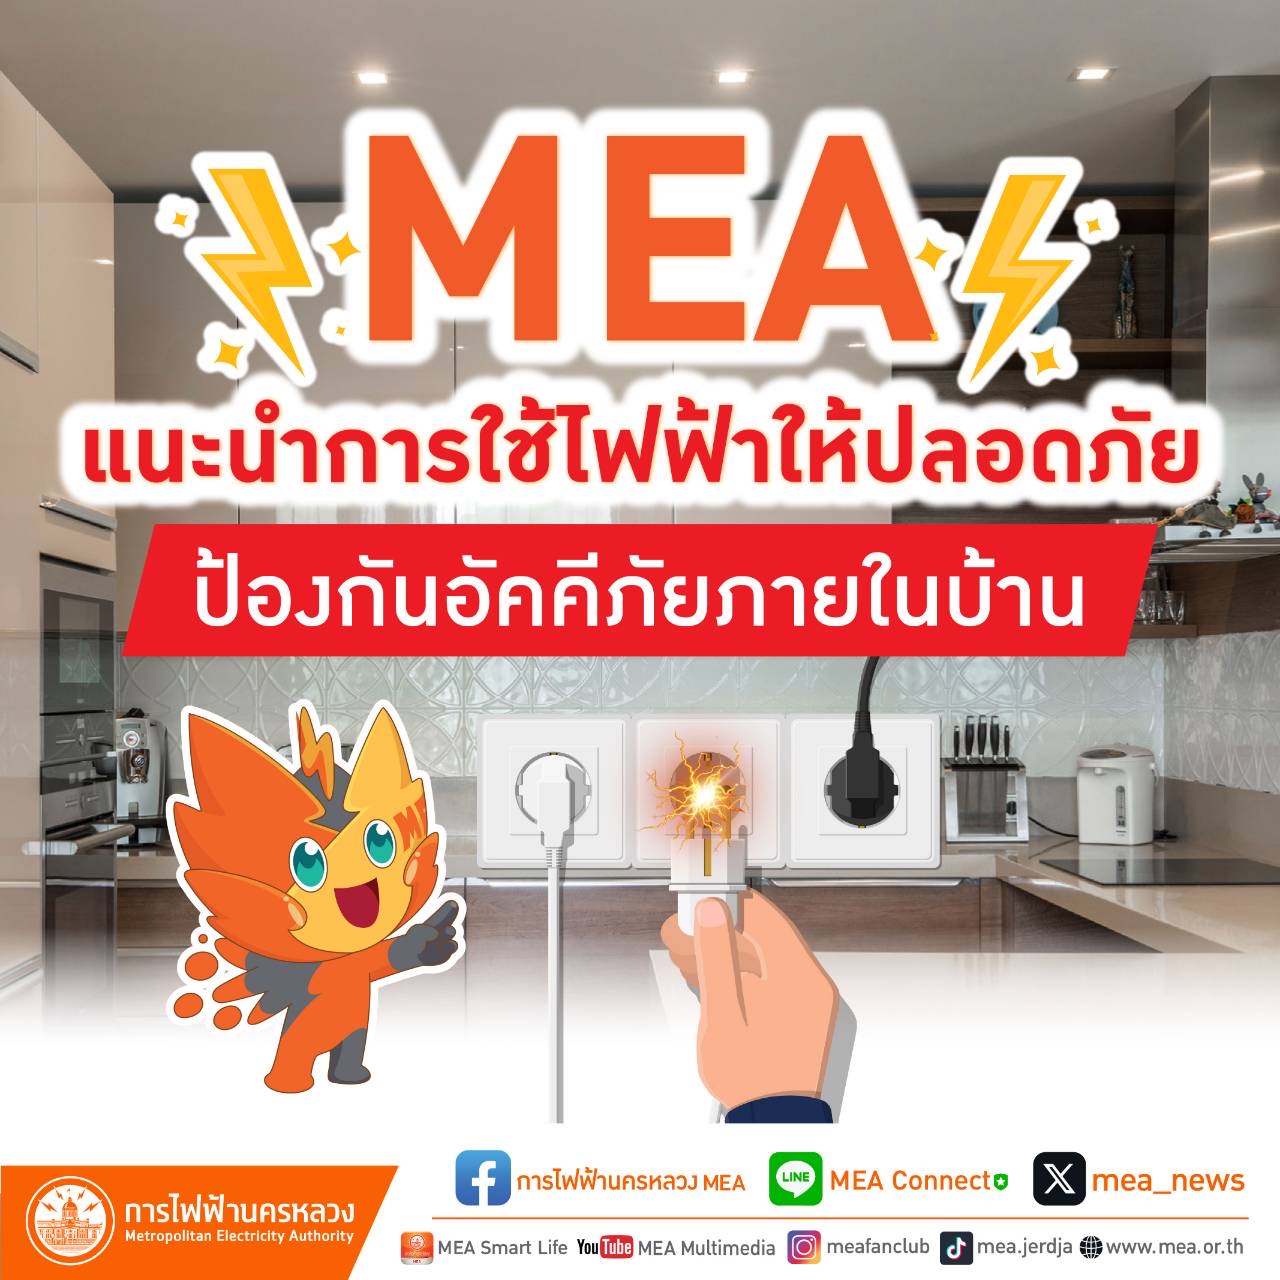 MEA แนะนำการใช้ไฟฟ้าให้ปลอดภัย ป้องกันอัคคีภัยภายในบ้าน